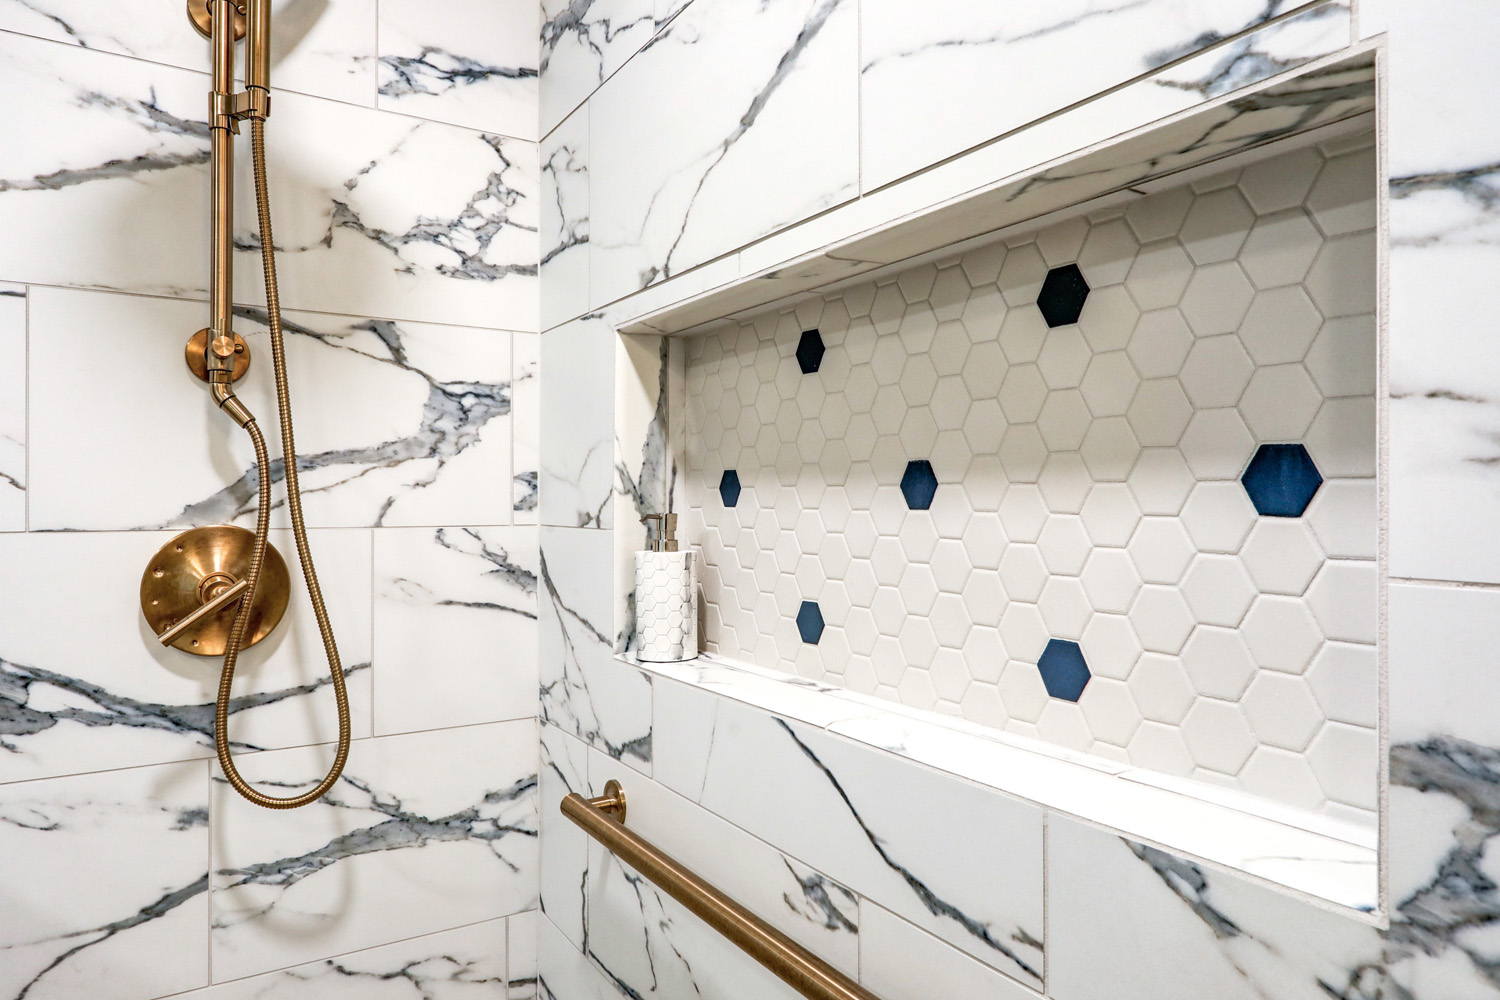 Hempfield Master Bathroom Remodel with shower niche